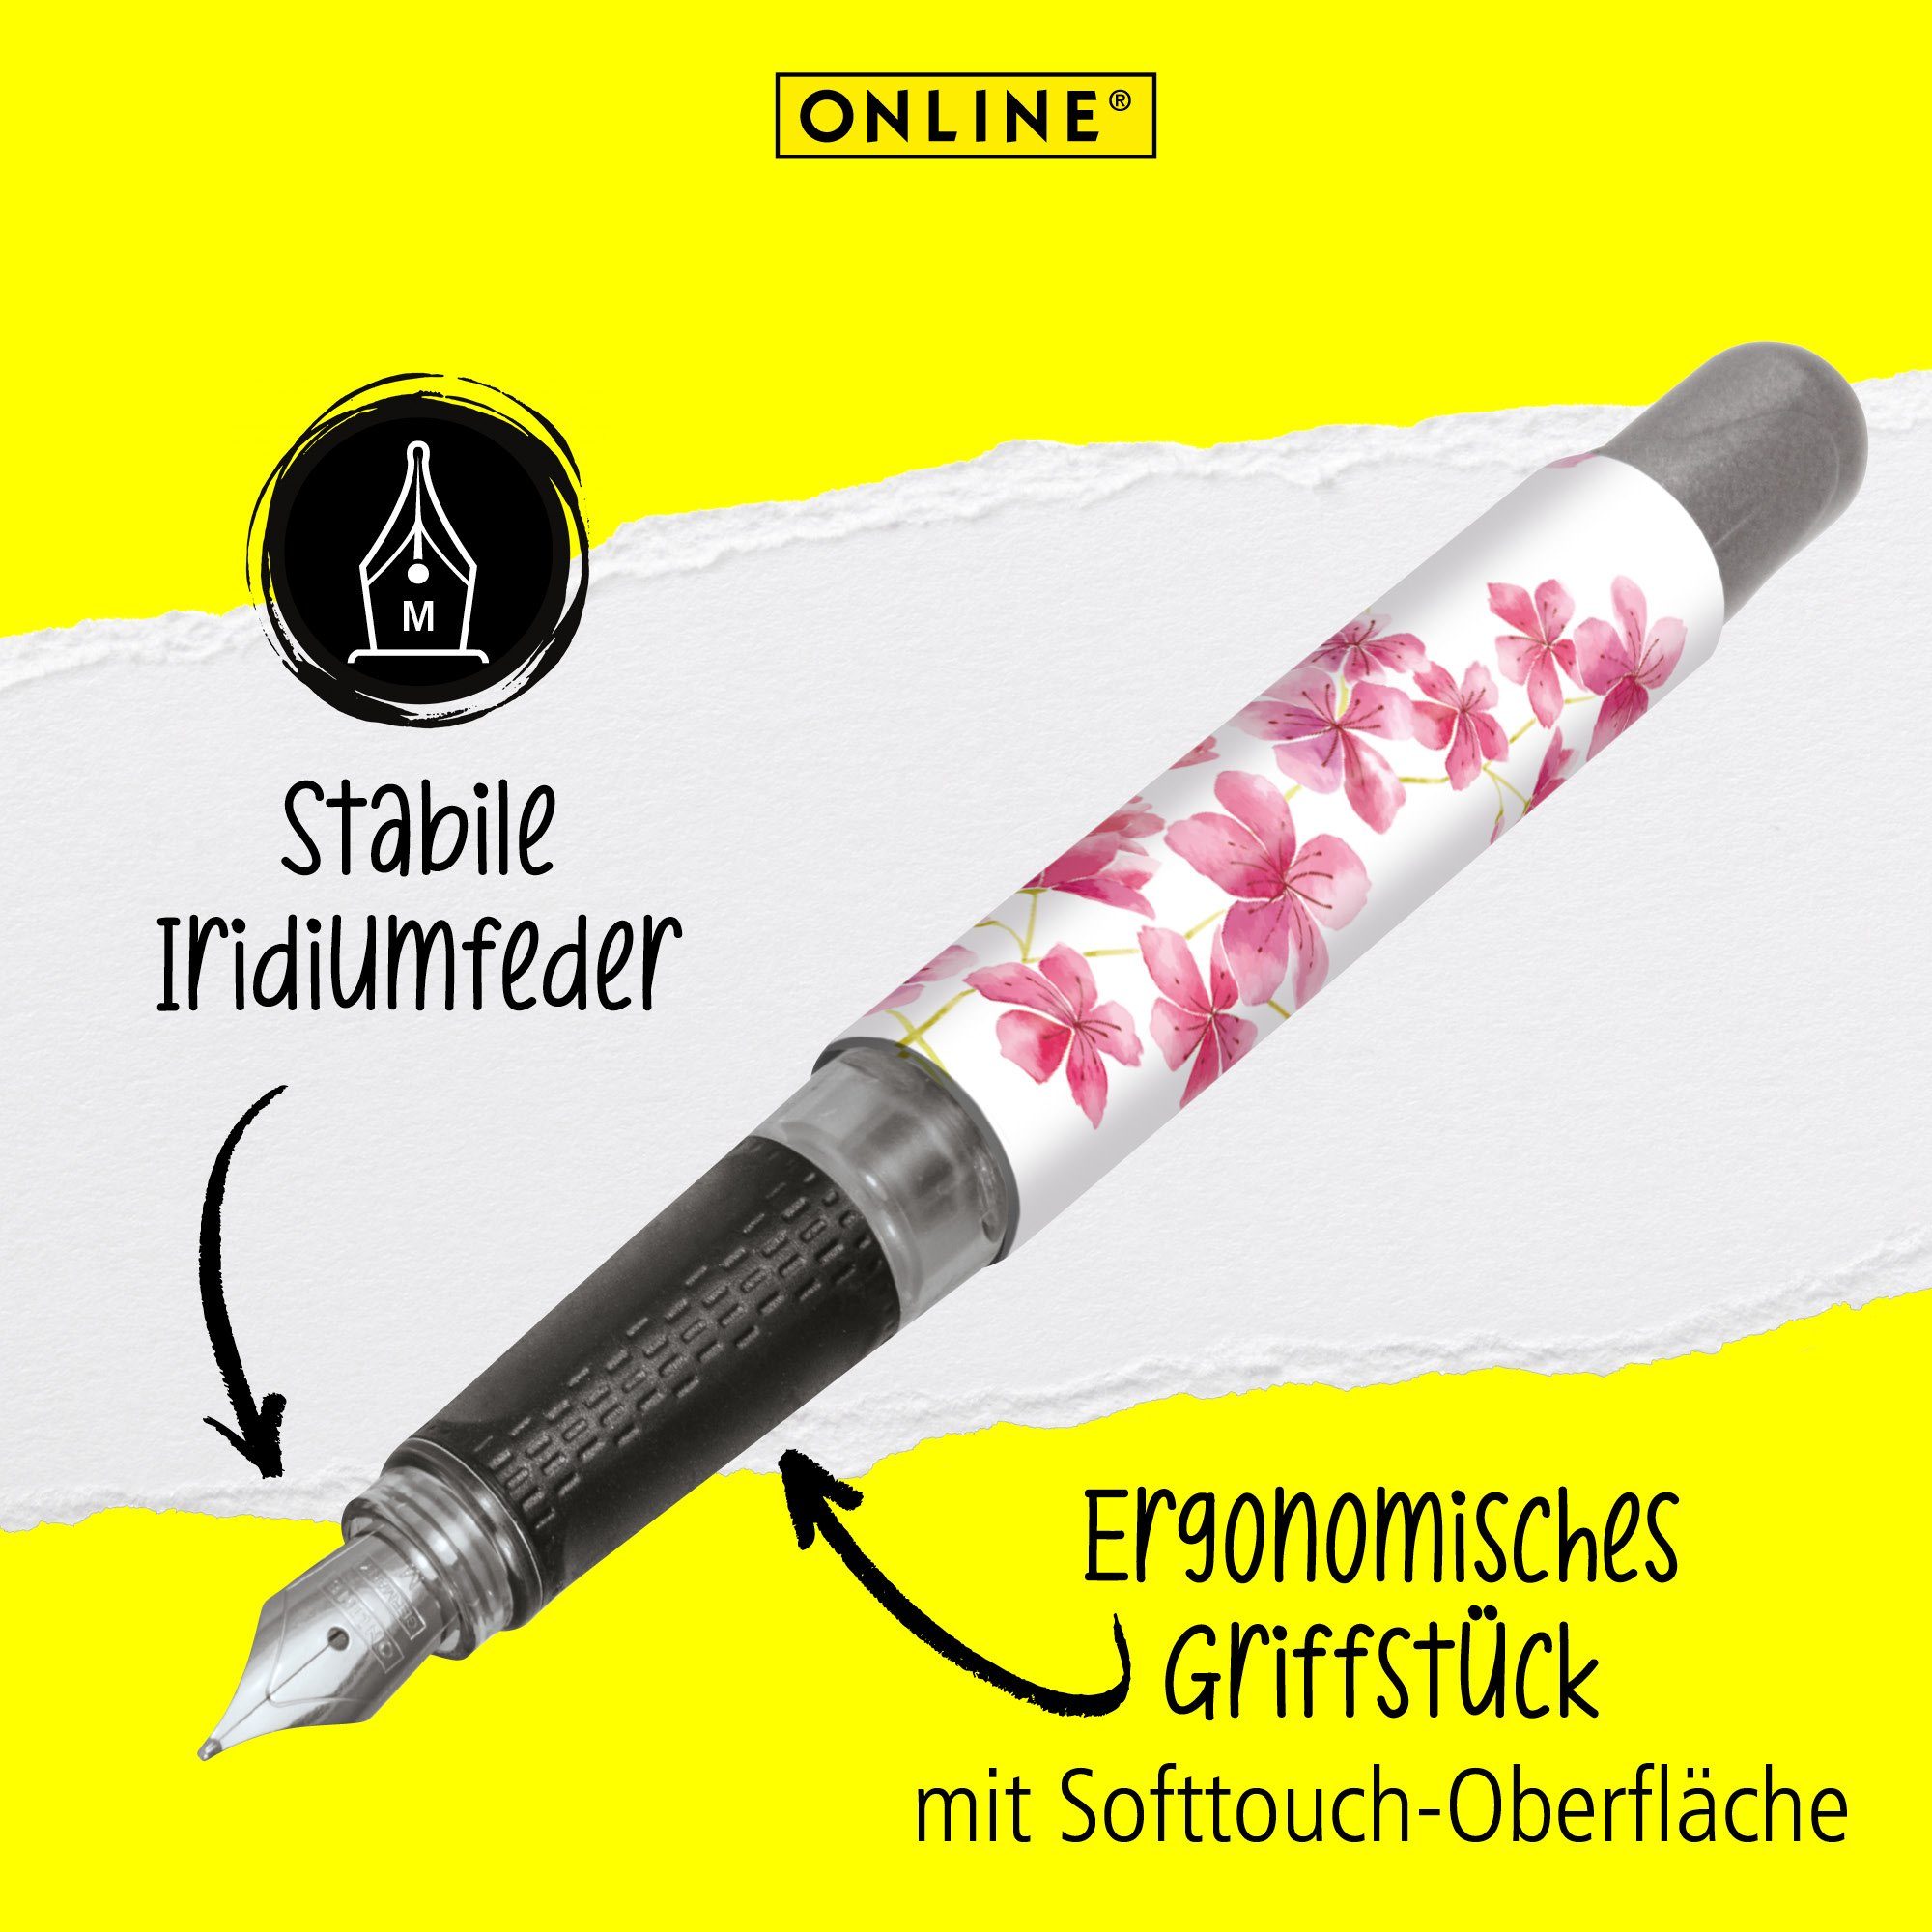 in hergestellt Füller Cherry Blossom Pen die Deutschland ideal Schule, ergonomisch, Füllhalter, Online für College